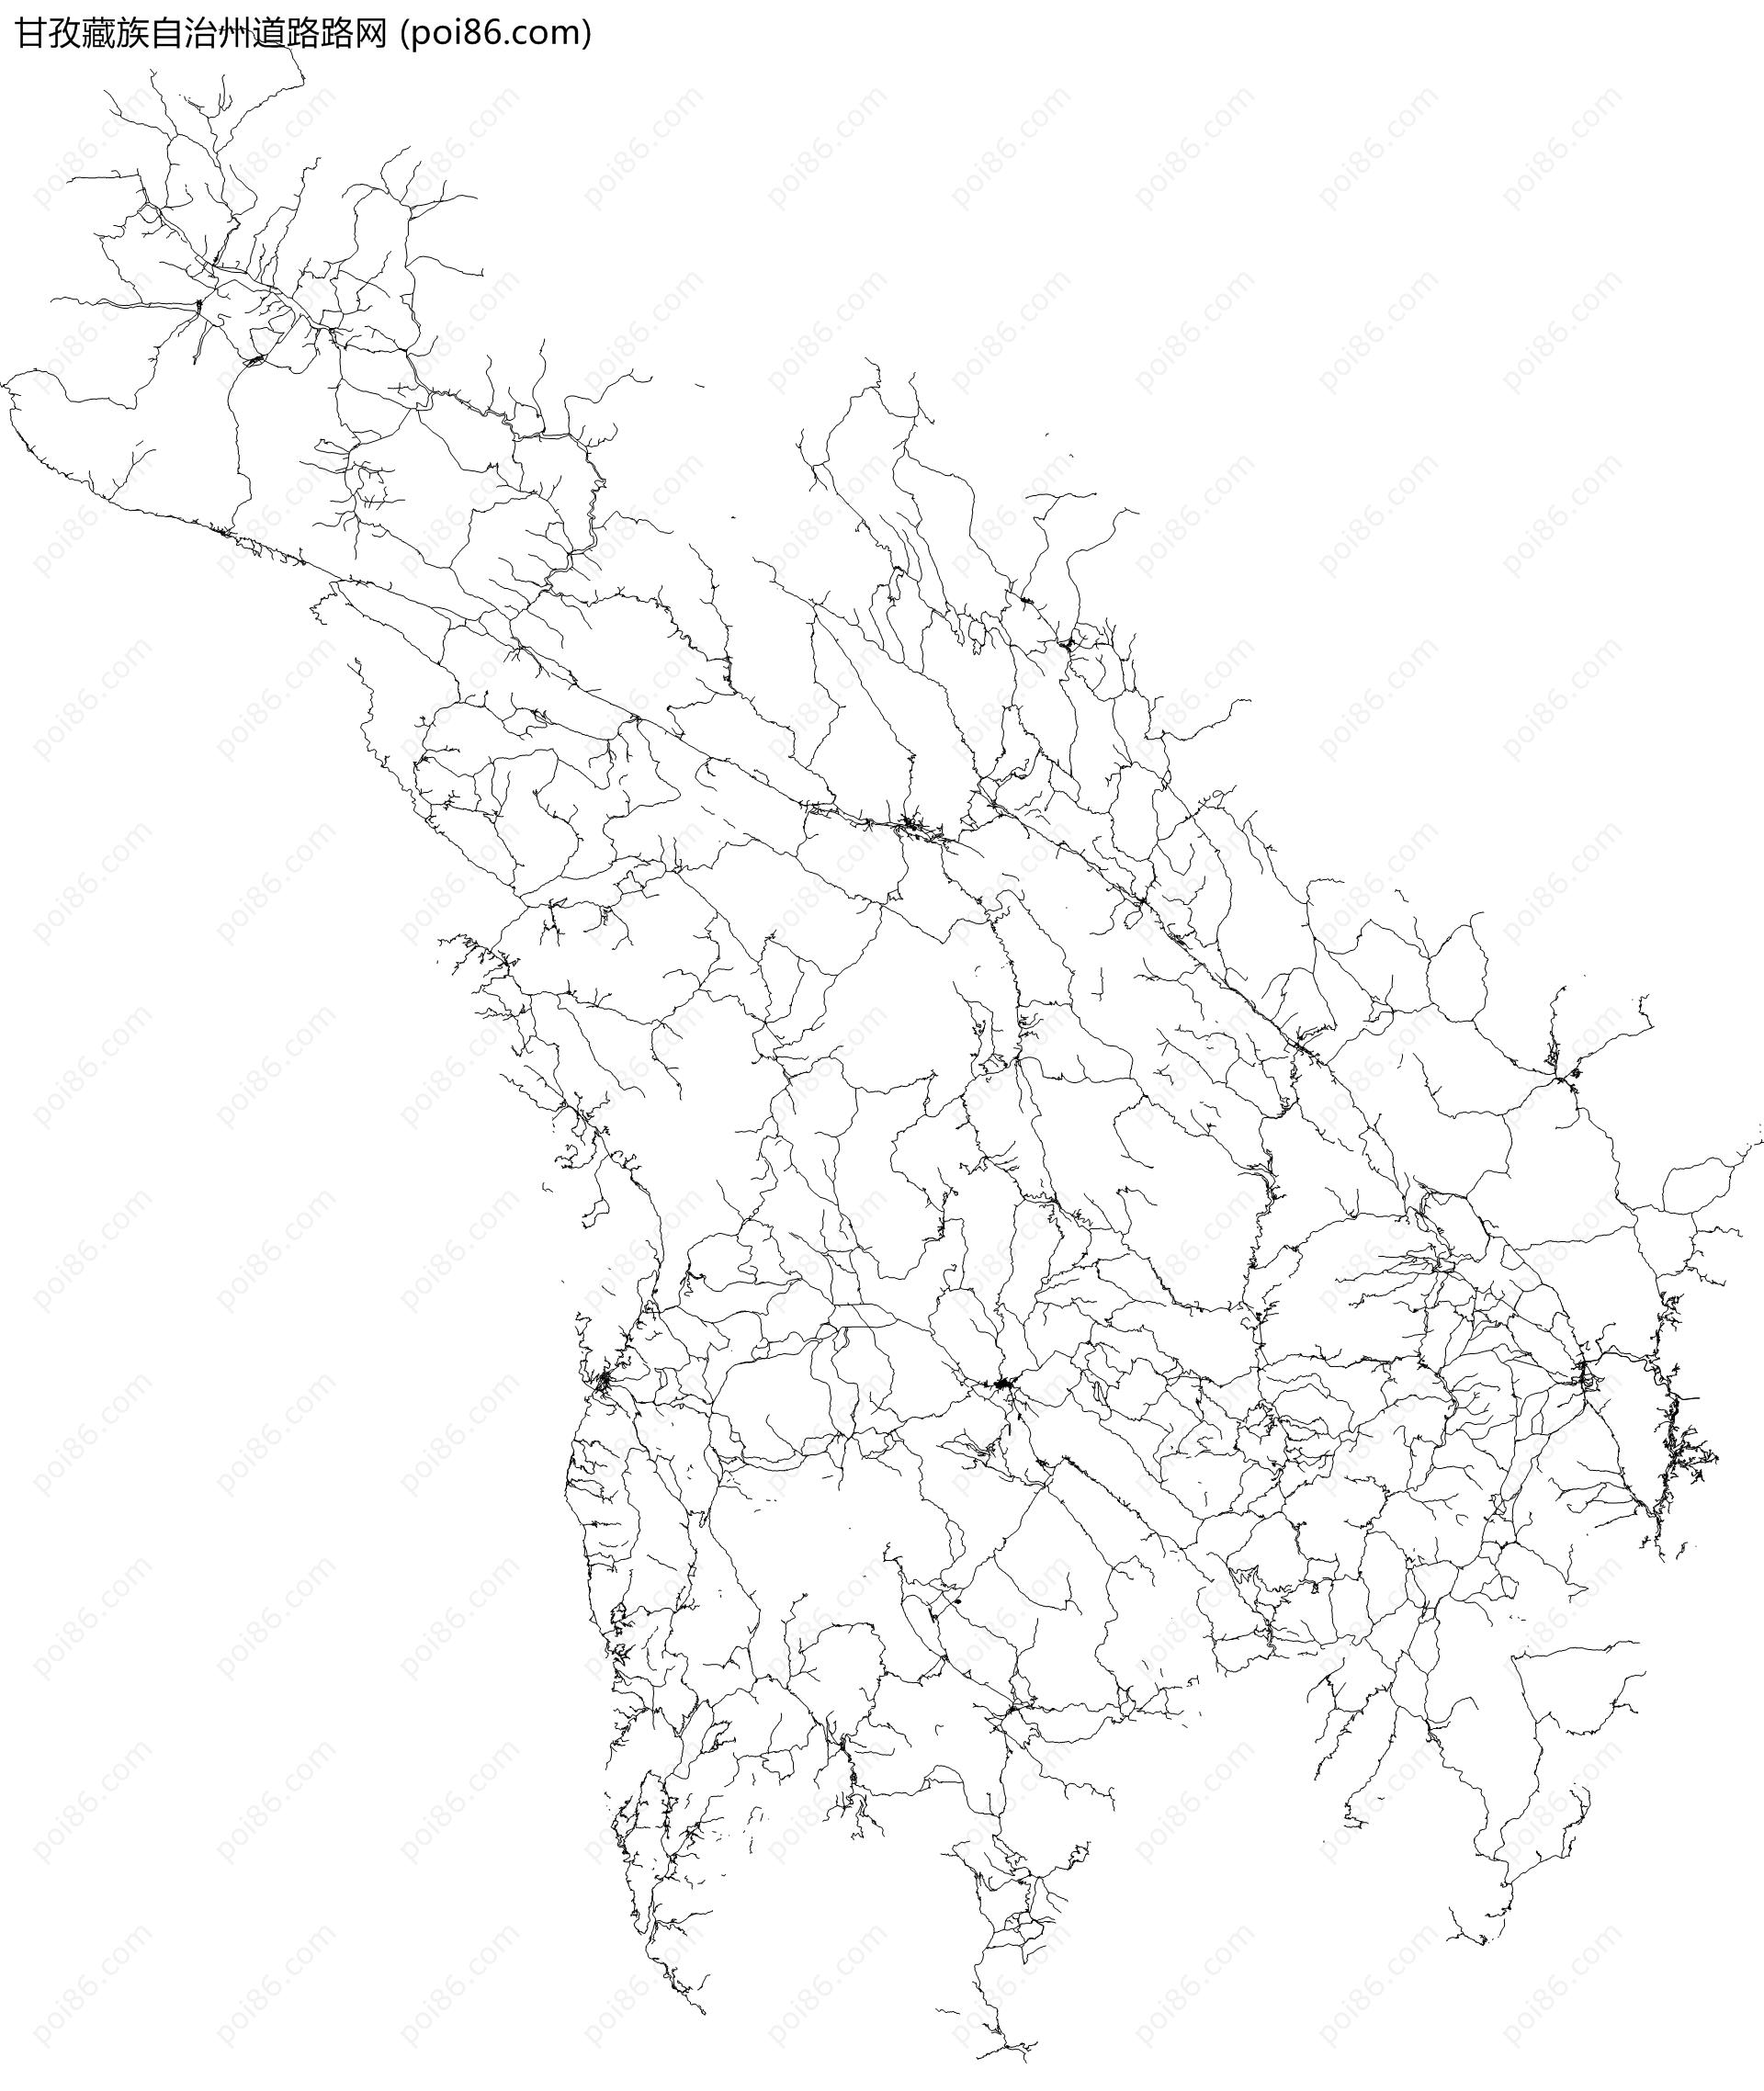 甘孜藏族自治州道路路网地图